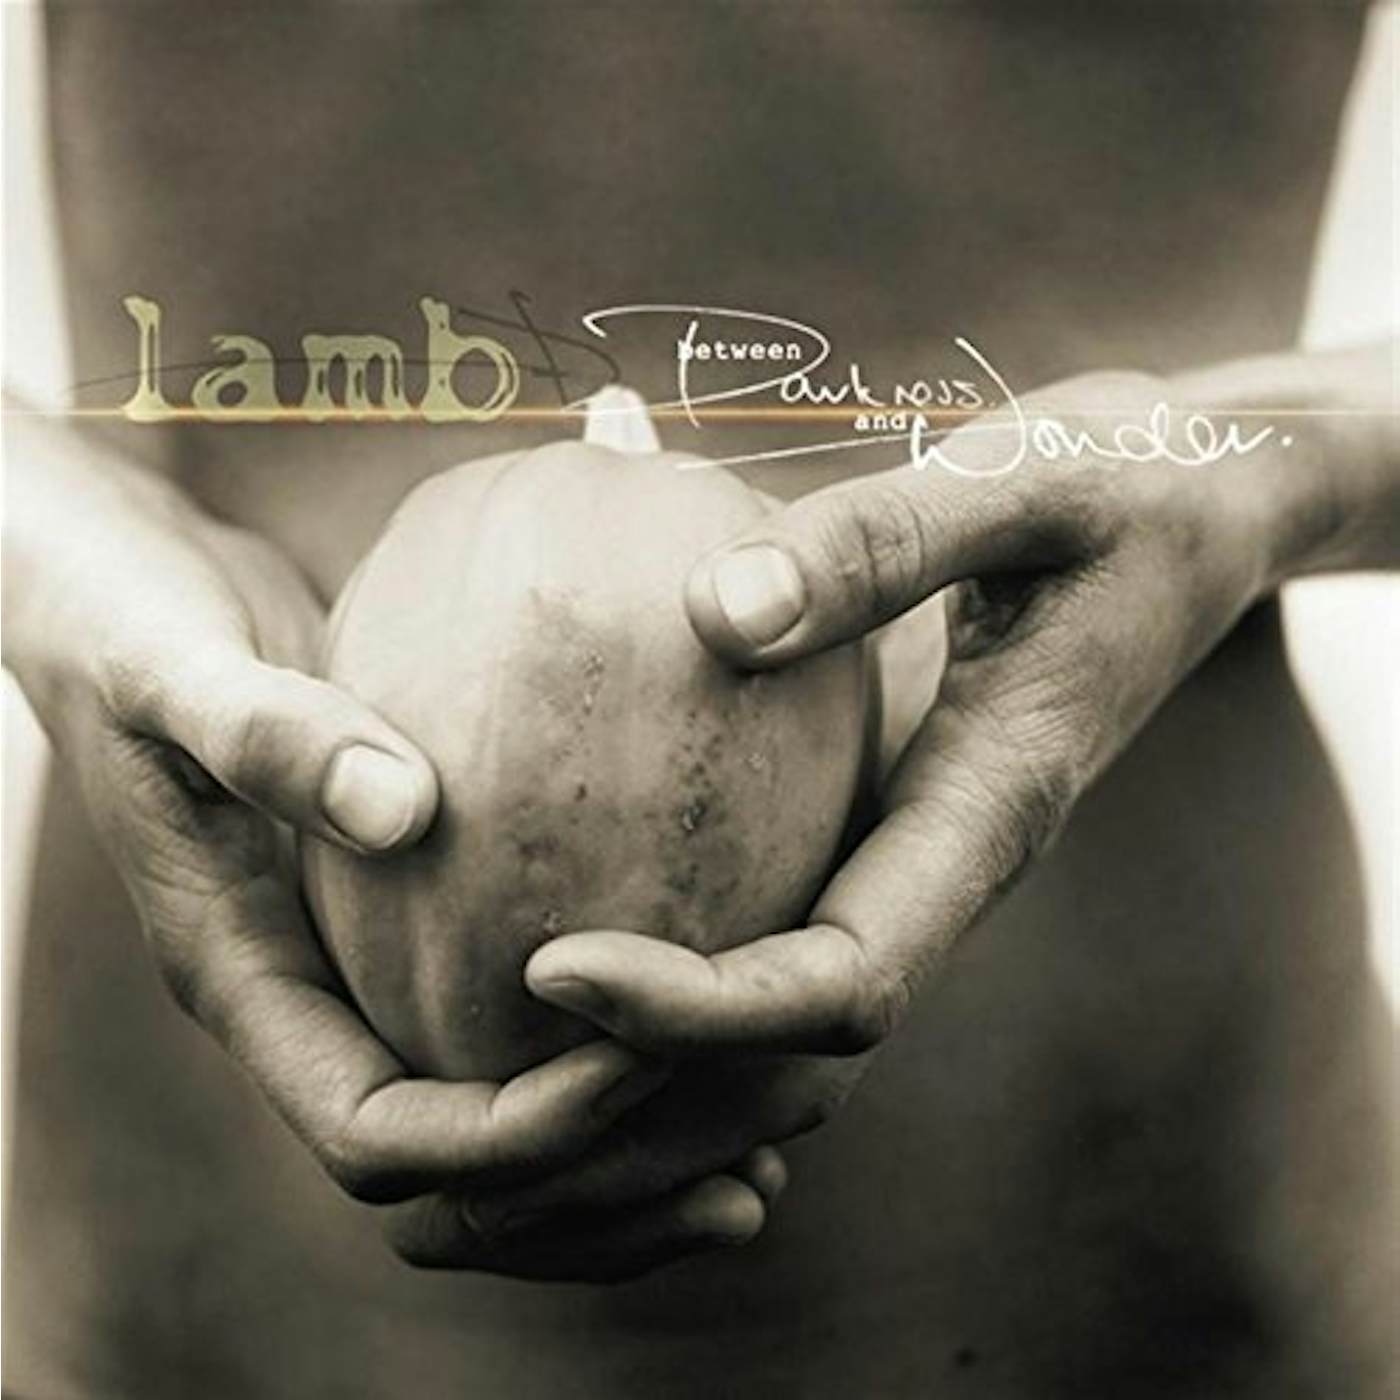 Lamb BETWEEN DARKNESS & WONDER CD